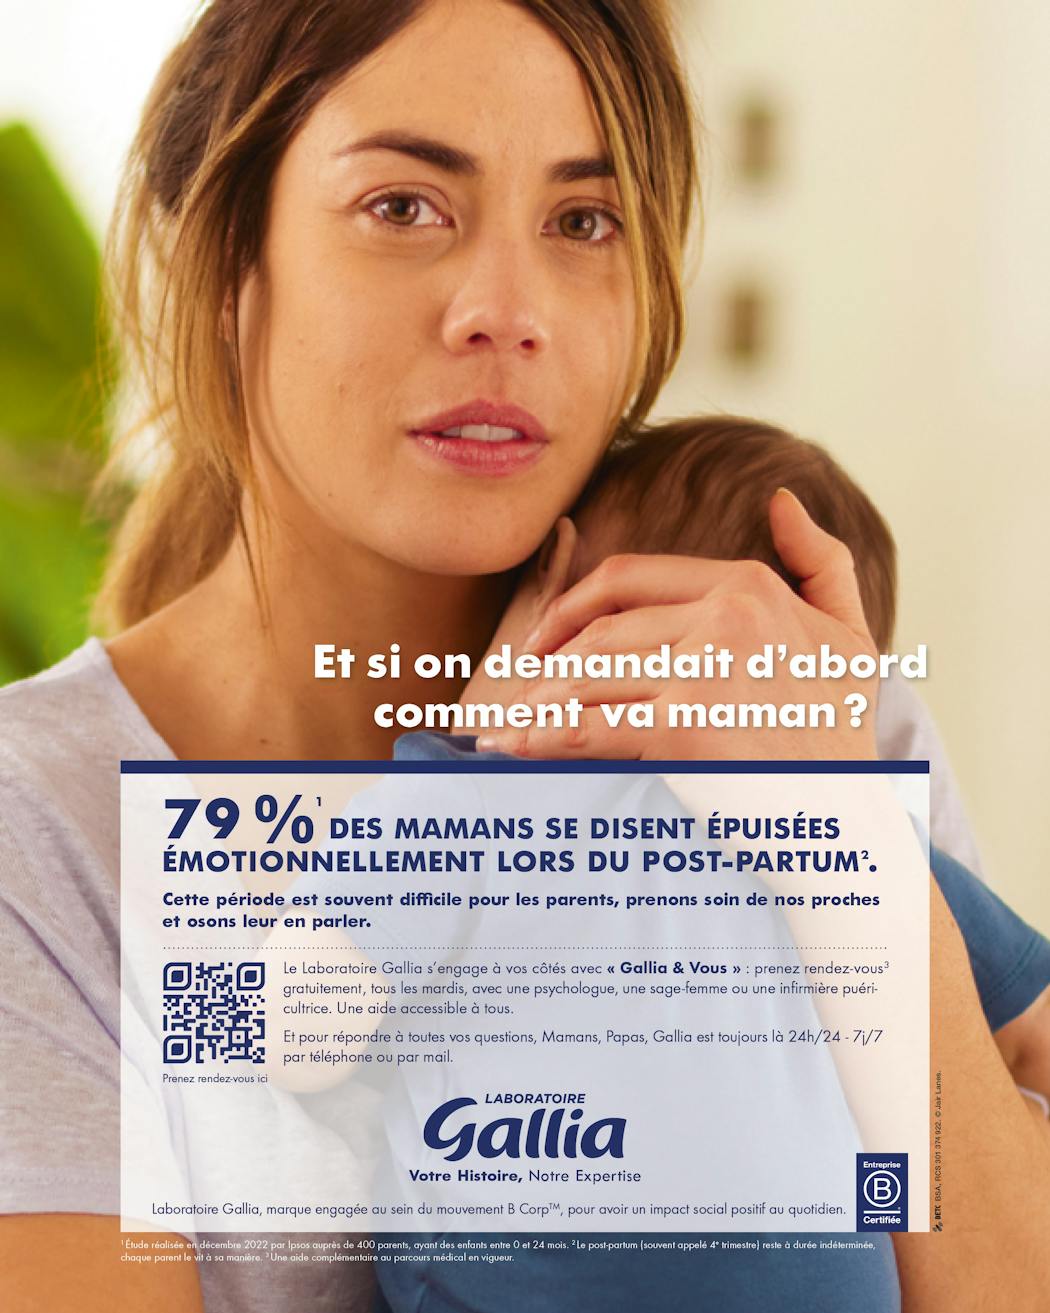 Affiche de la campagne Gallia "Osons parler du post-partum"